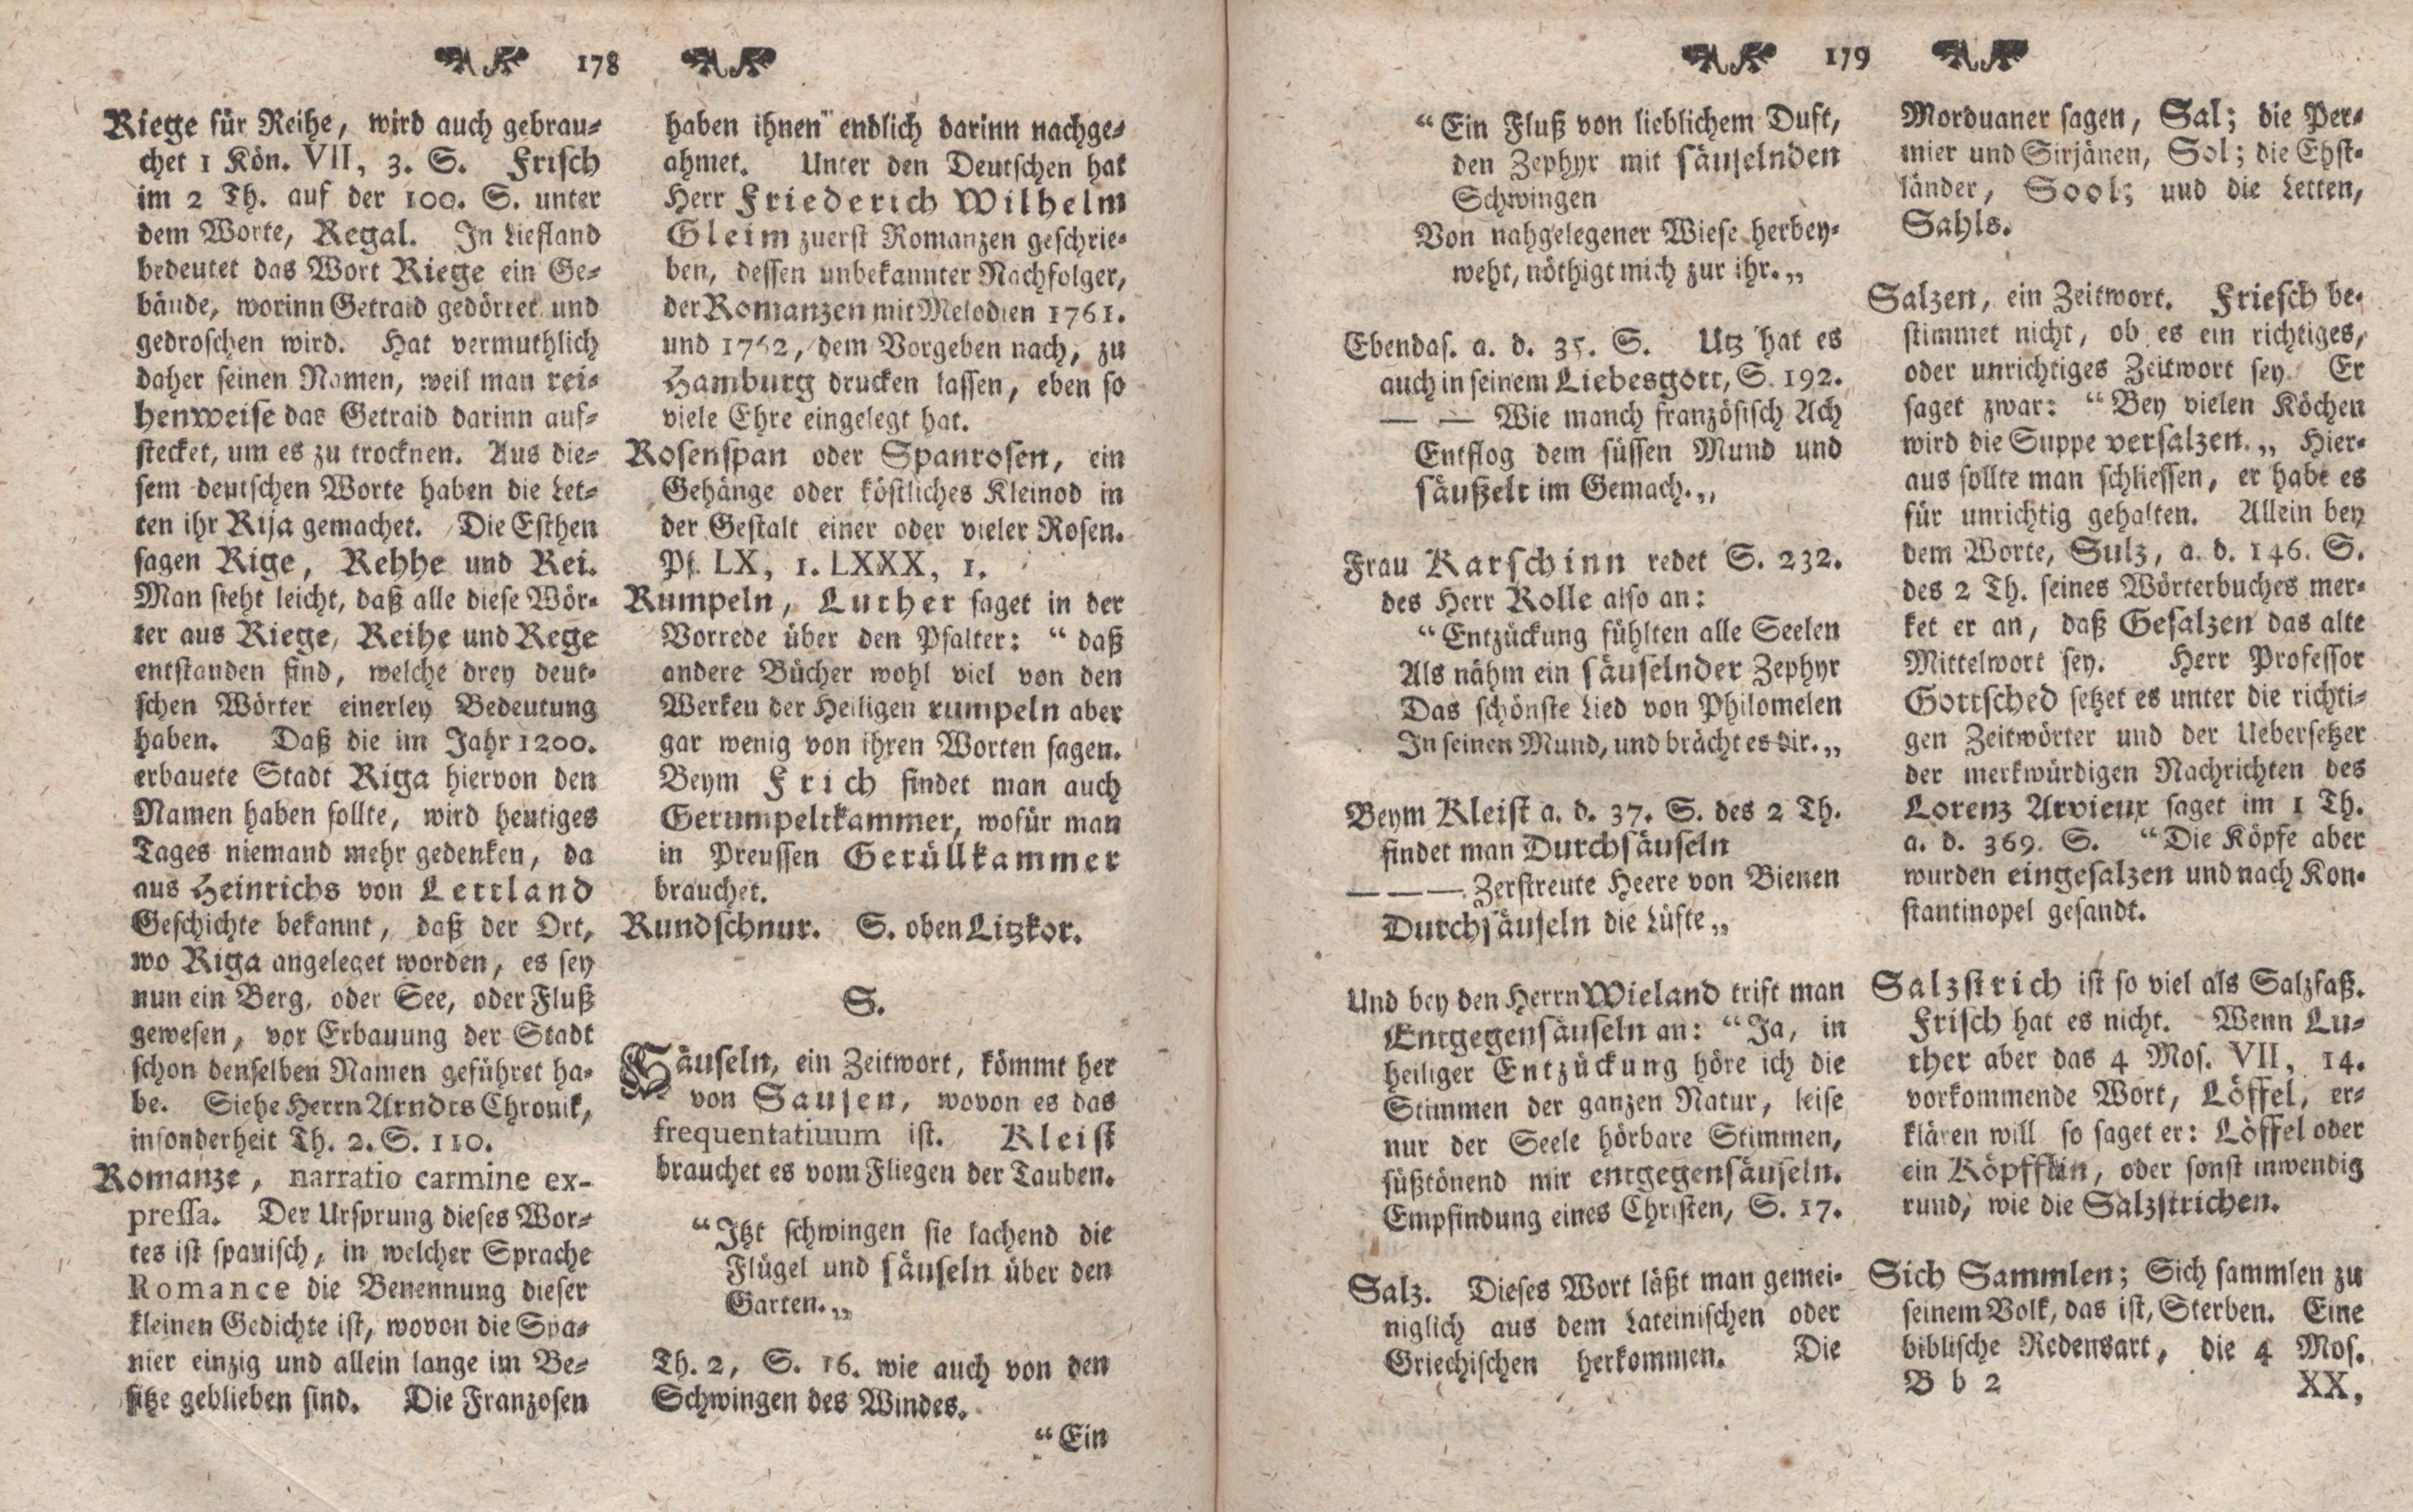 Gelehrte Beyträge zu den Rigischen Anzeigen 1766 (1766) | 90. (178-179) Main body of text